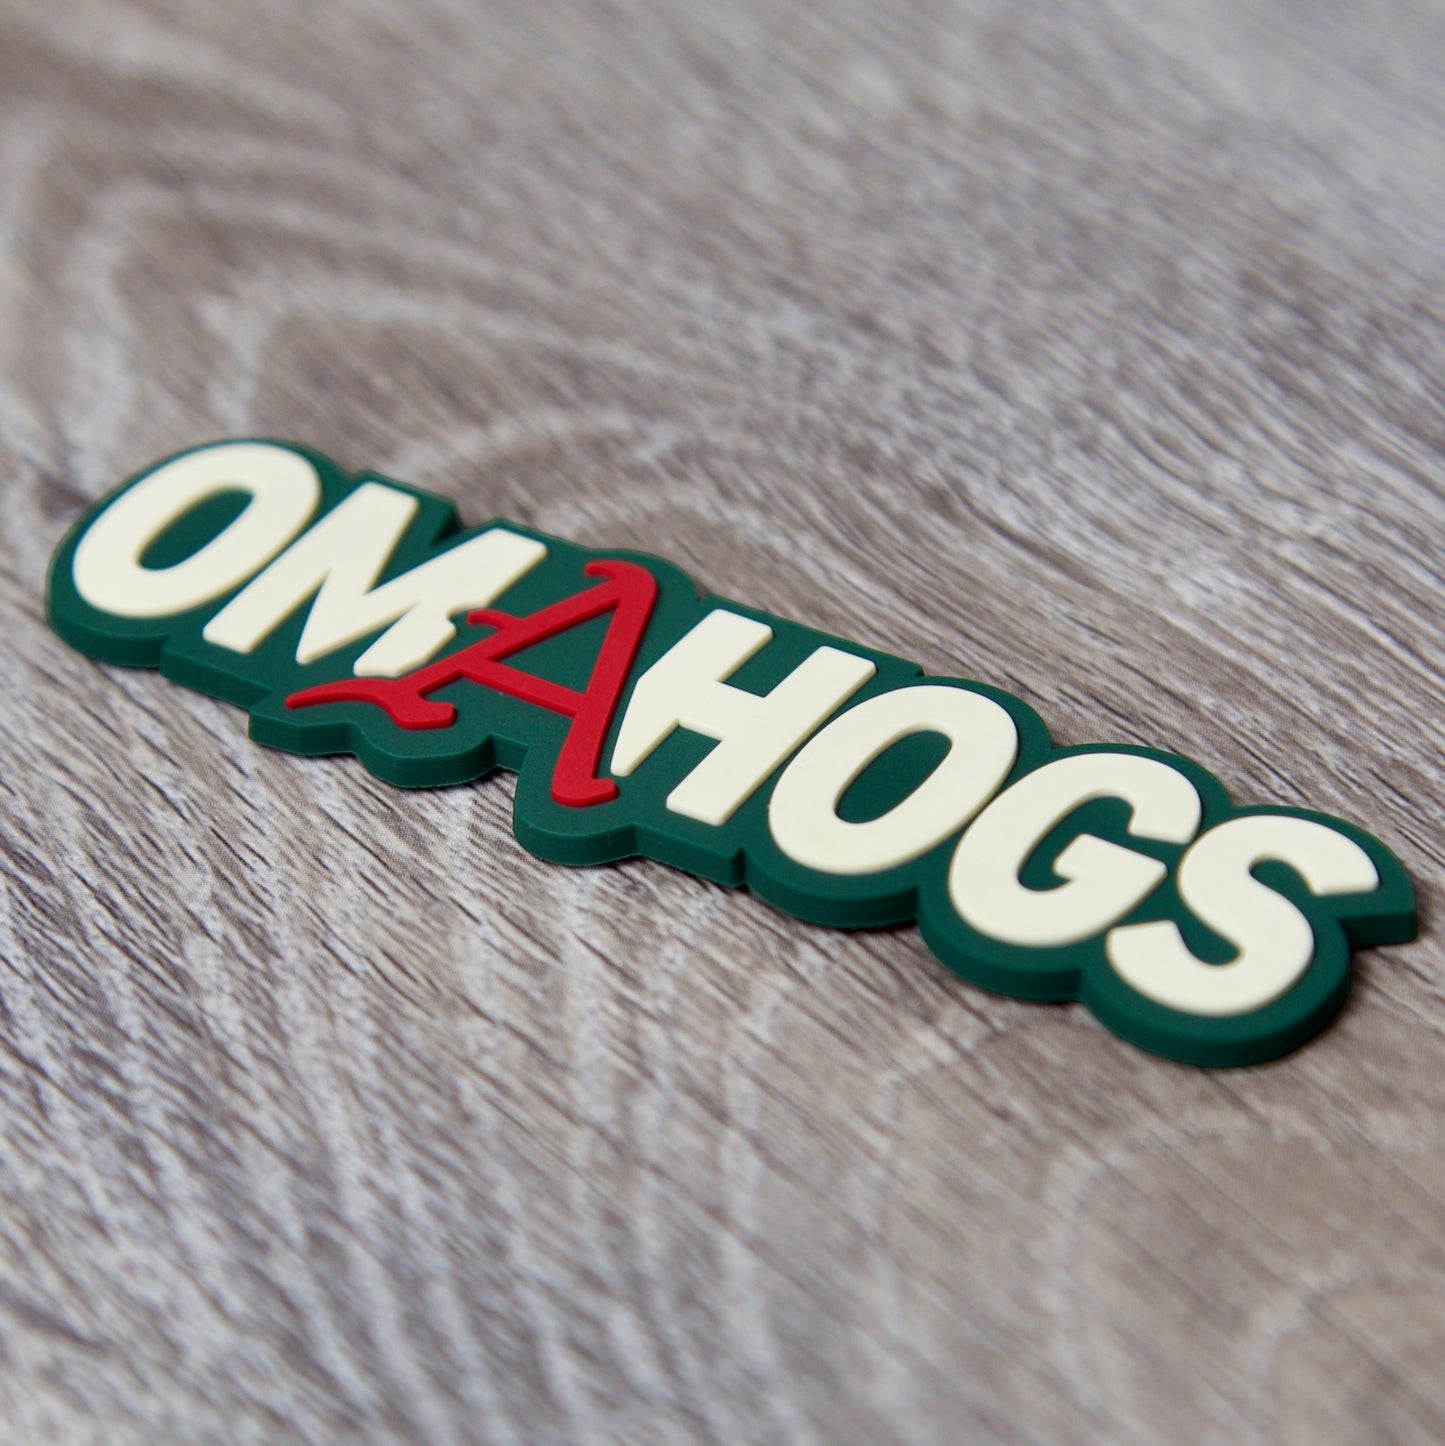 Arkansas Razorbacks OMAHOGS 3D Snapback Trucker Hat- Loden/ Green Camo